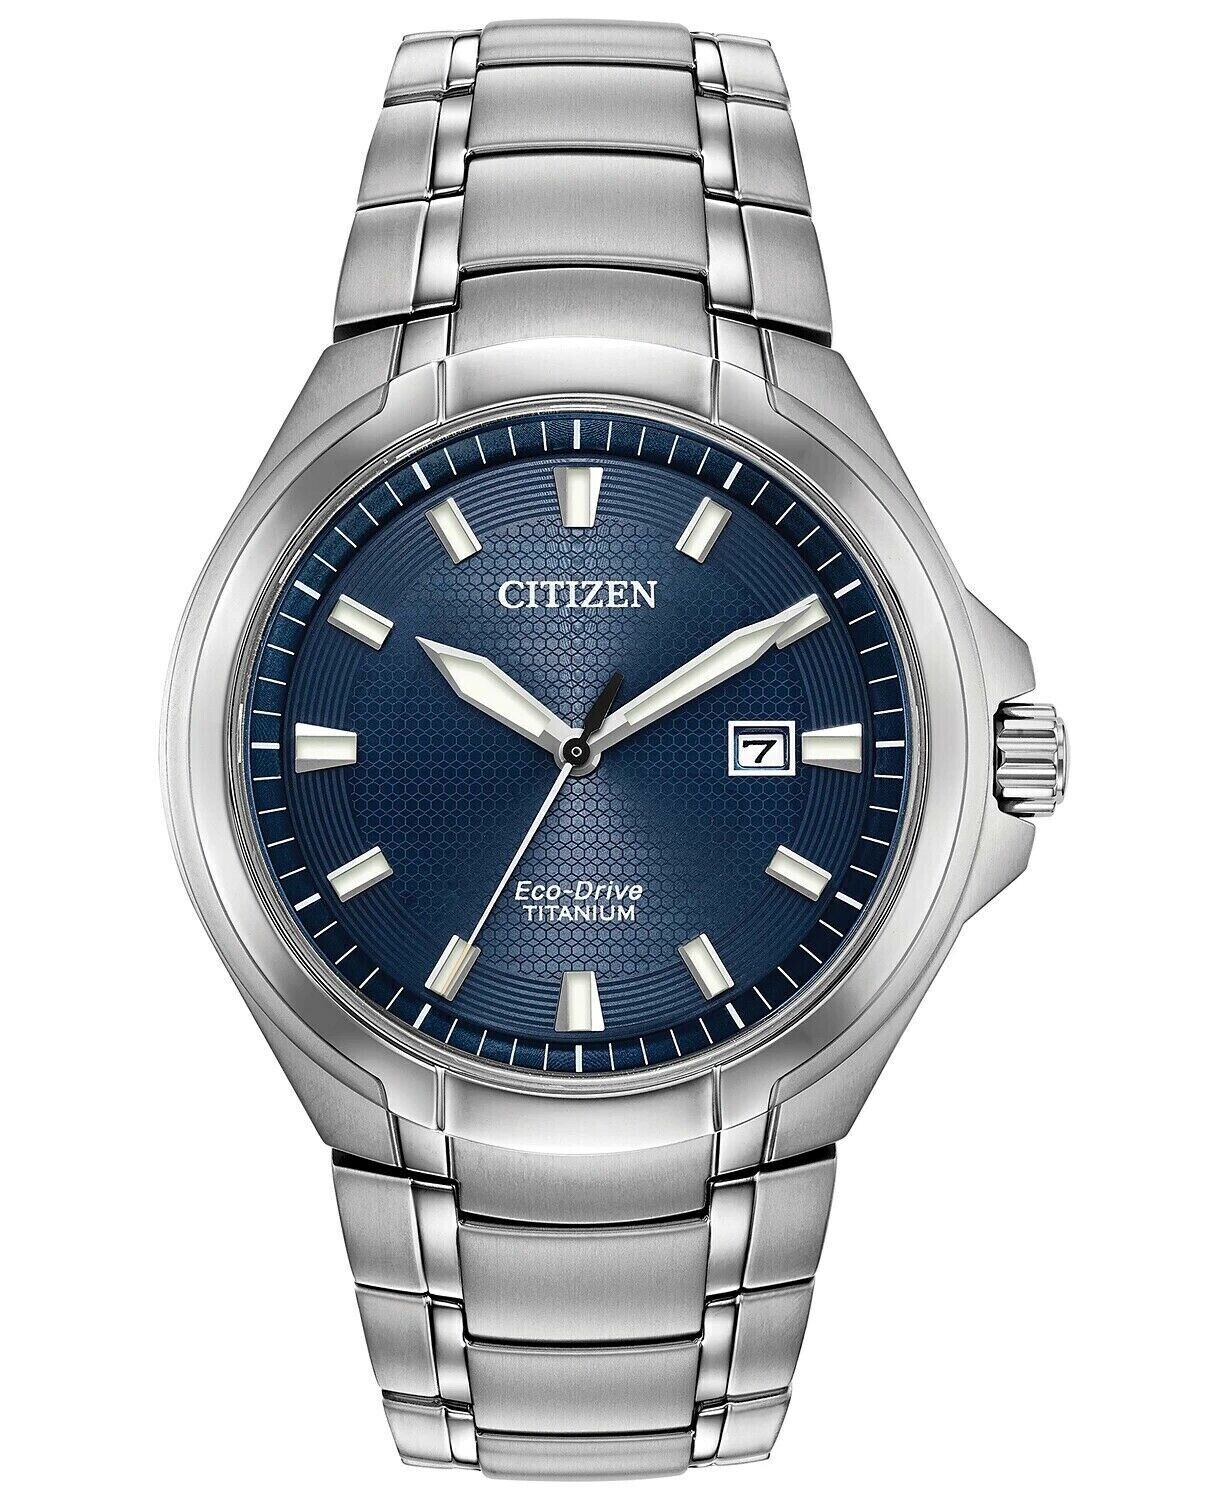 Reloj hombre Titanio Citizen Eco-drive Paradigm Titanium BM7431-51L dial azul 43mm caja y correa de Titanio Cristal de Zafiro 100m WR